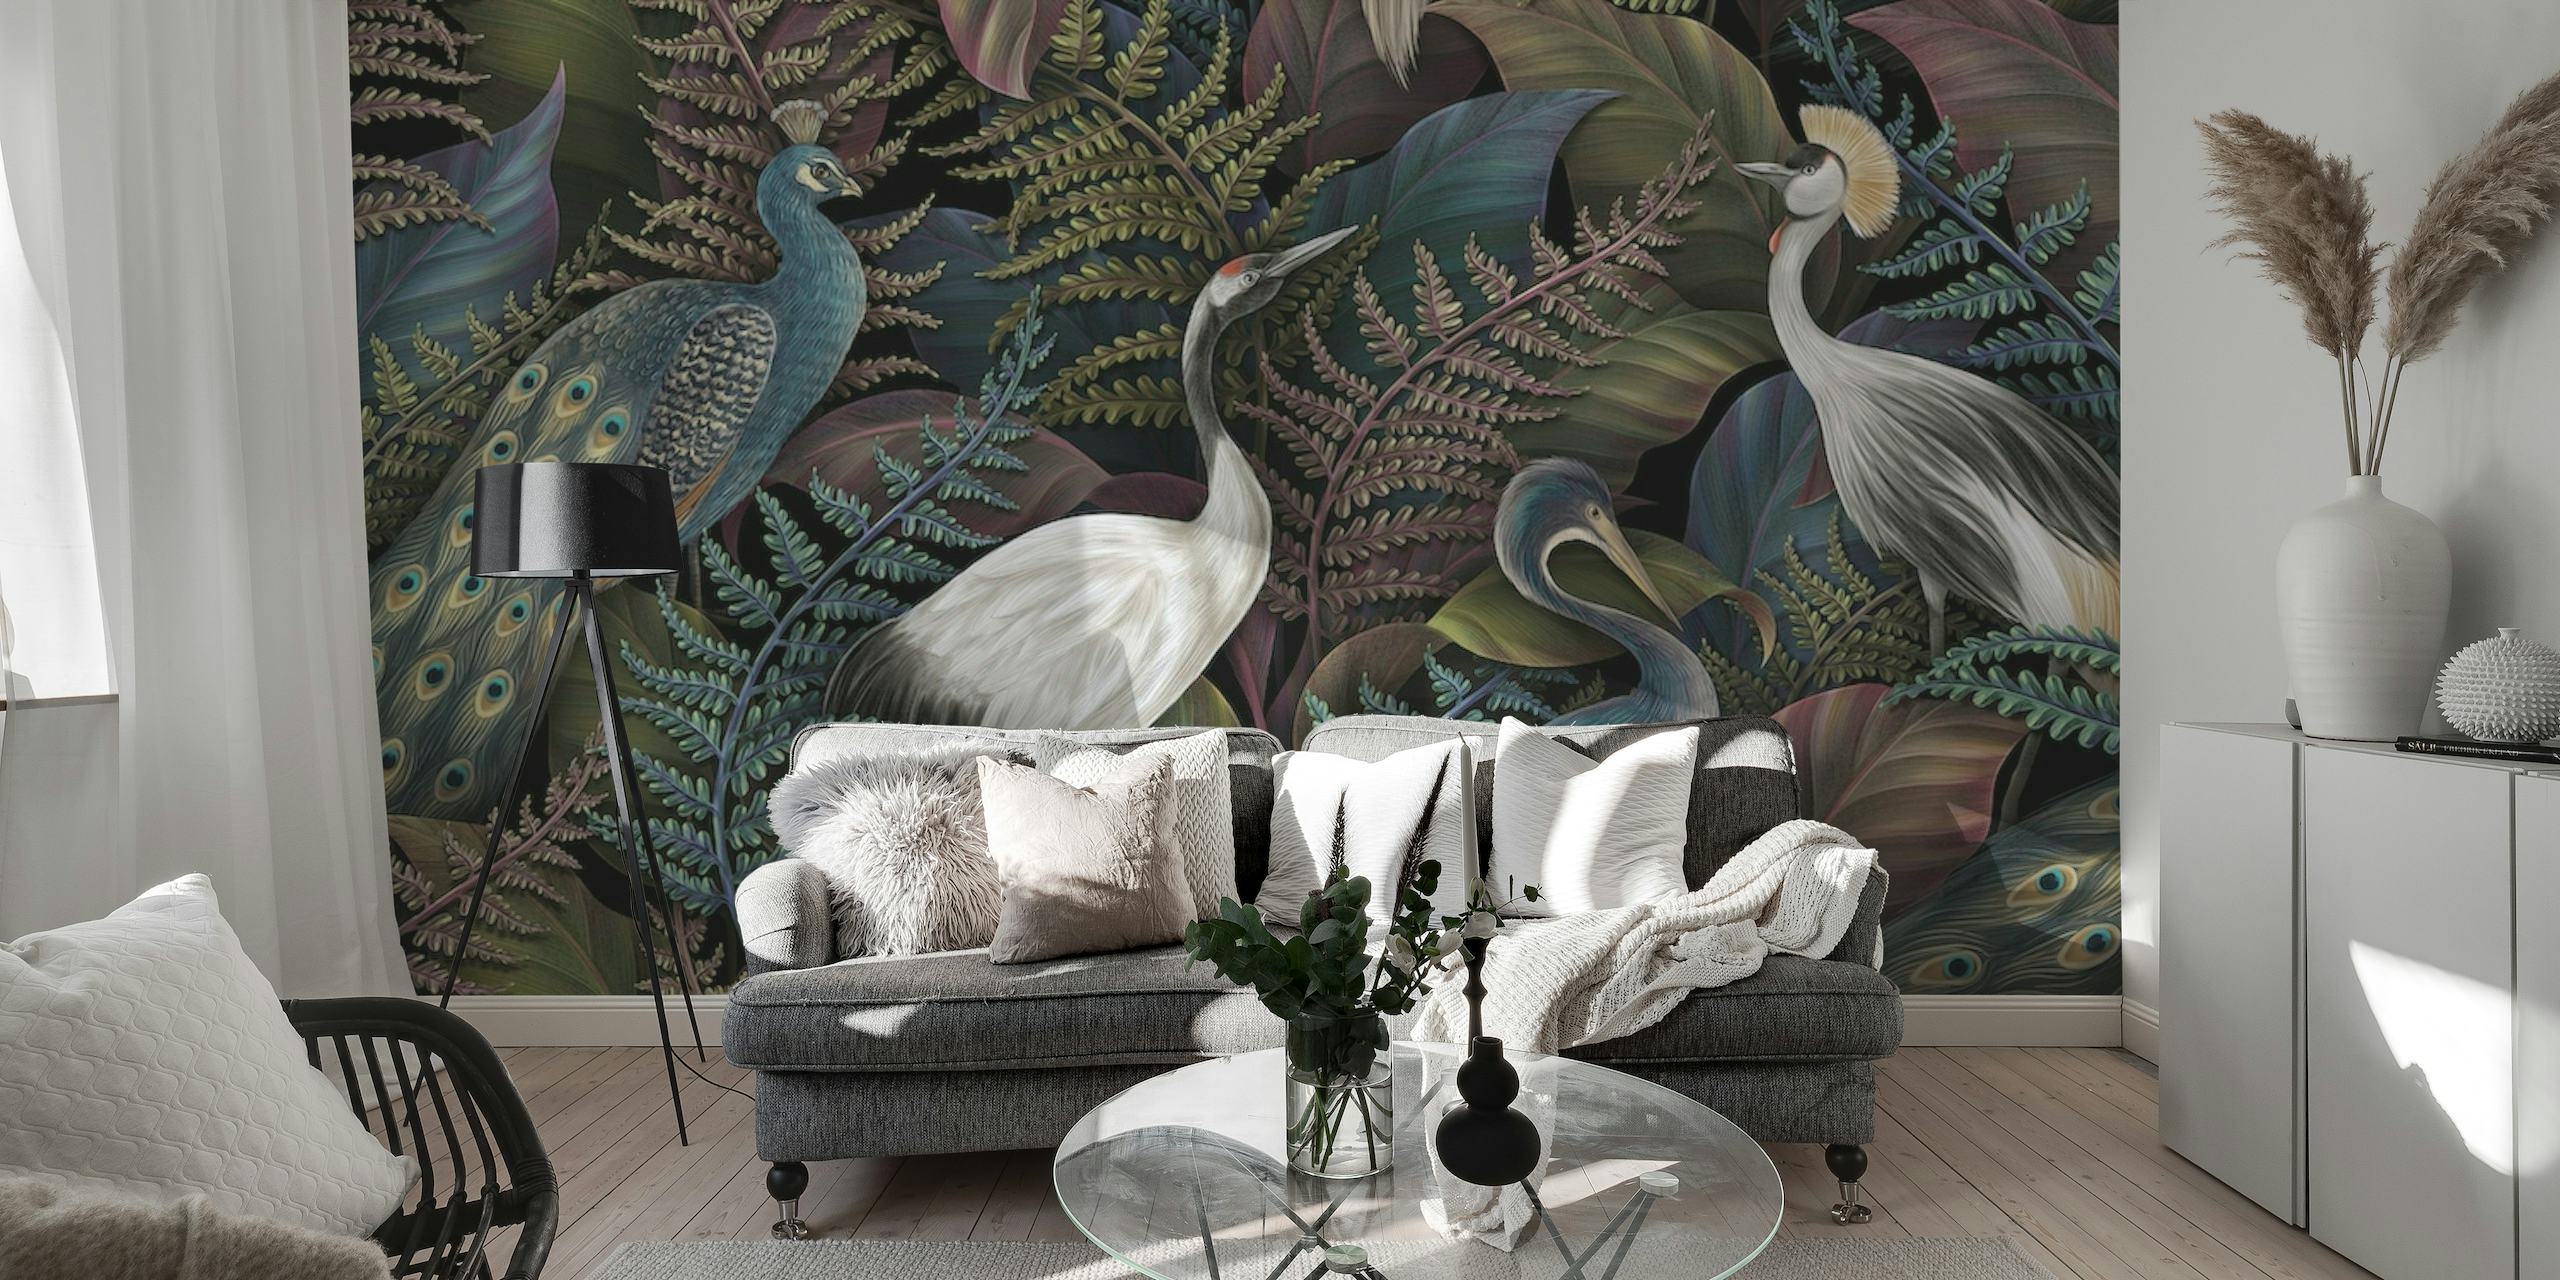 Un sofisticato murale con uccelli eleganti e fogliame tropicale in una fitta giungla.